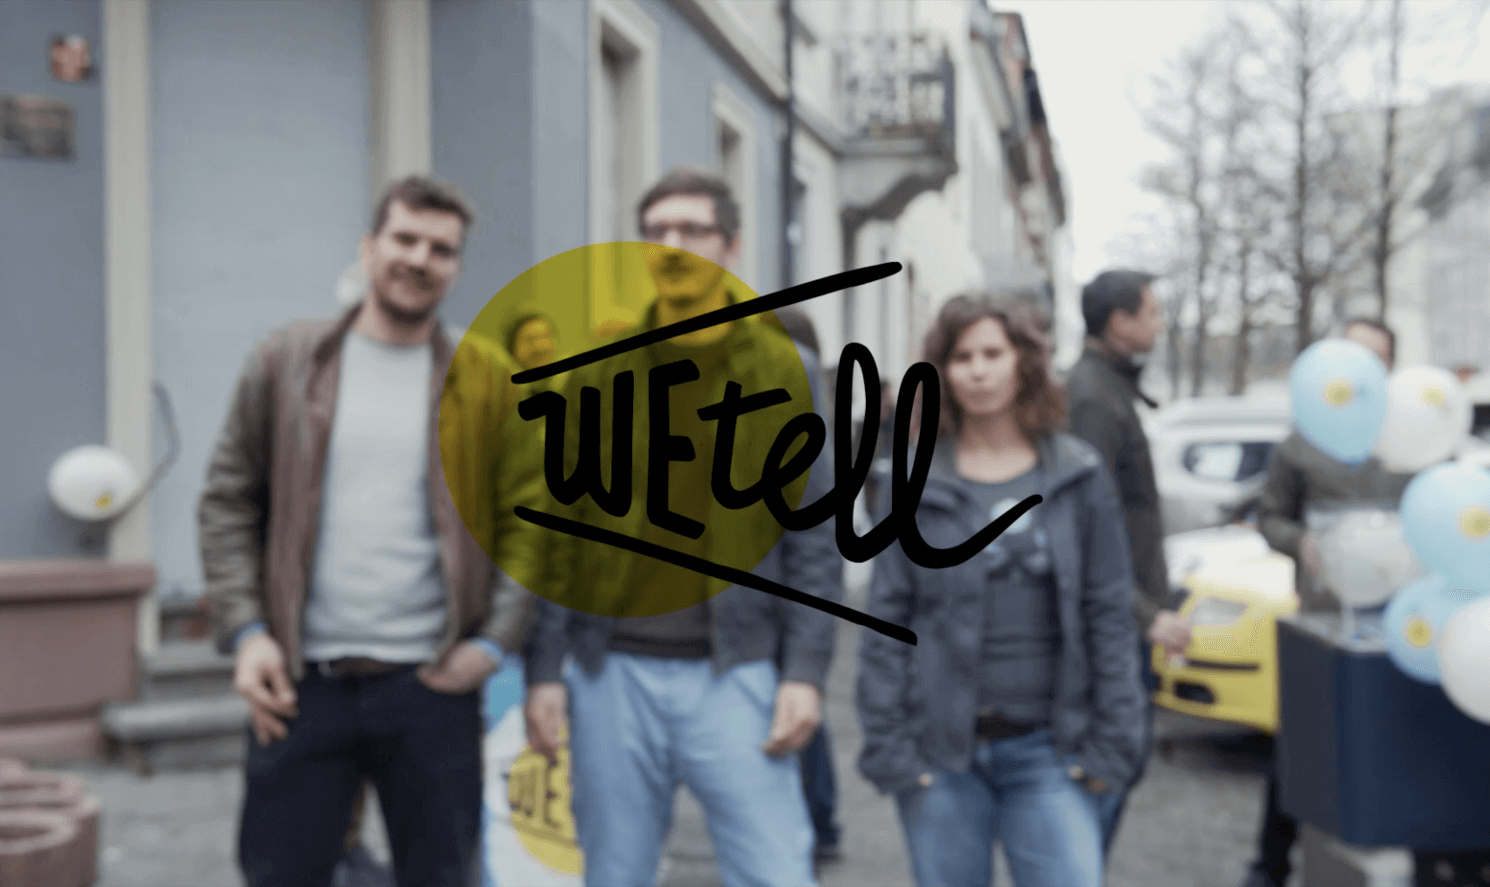 https://www.wetell.de/ueber-uns/news/wetell-nach-erfolgreicher-crowdfunding-kampagne/ - WEtell nach erfolgreicher Crowdfunding Kampagne